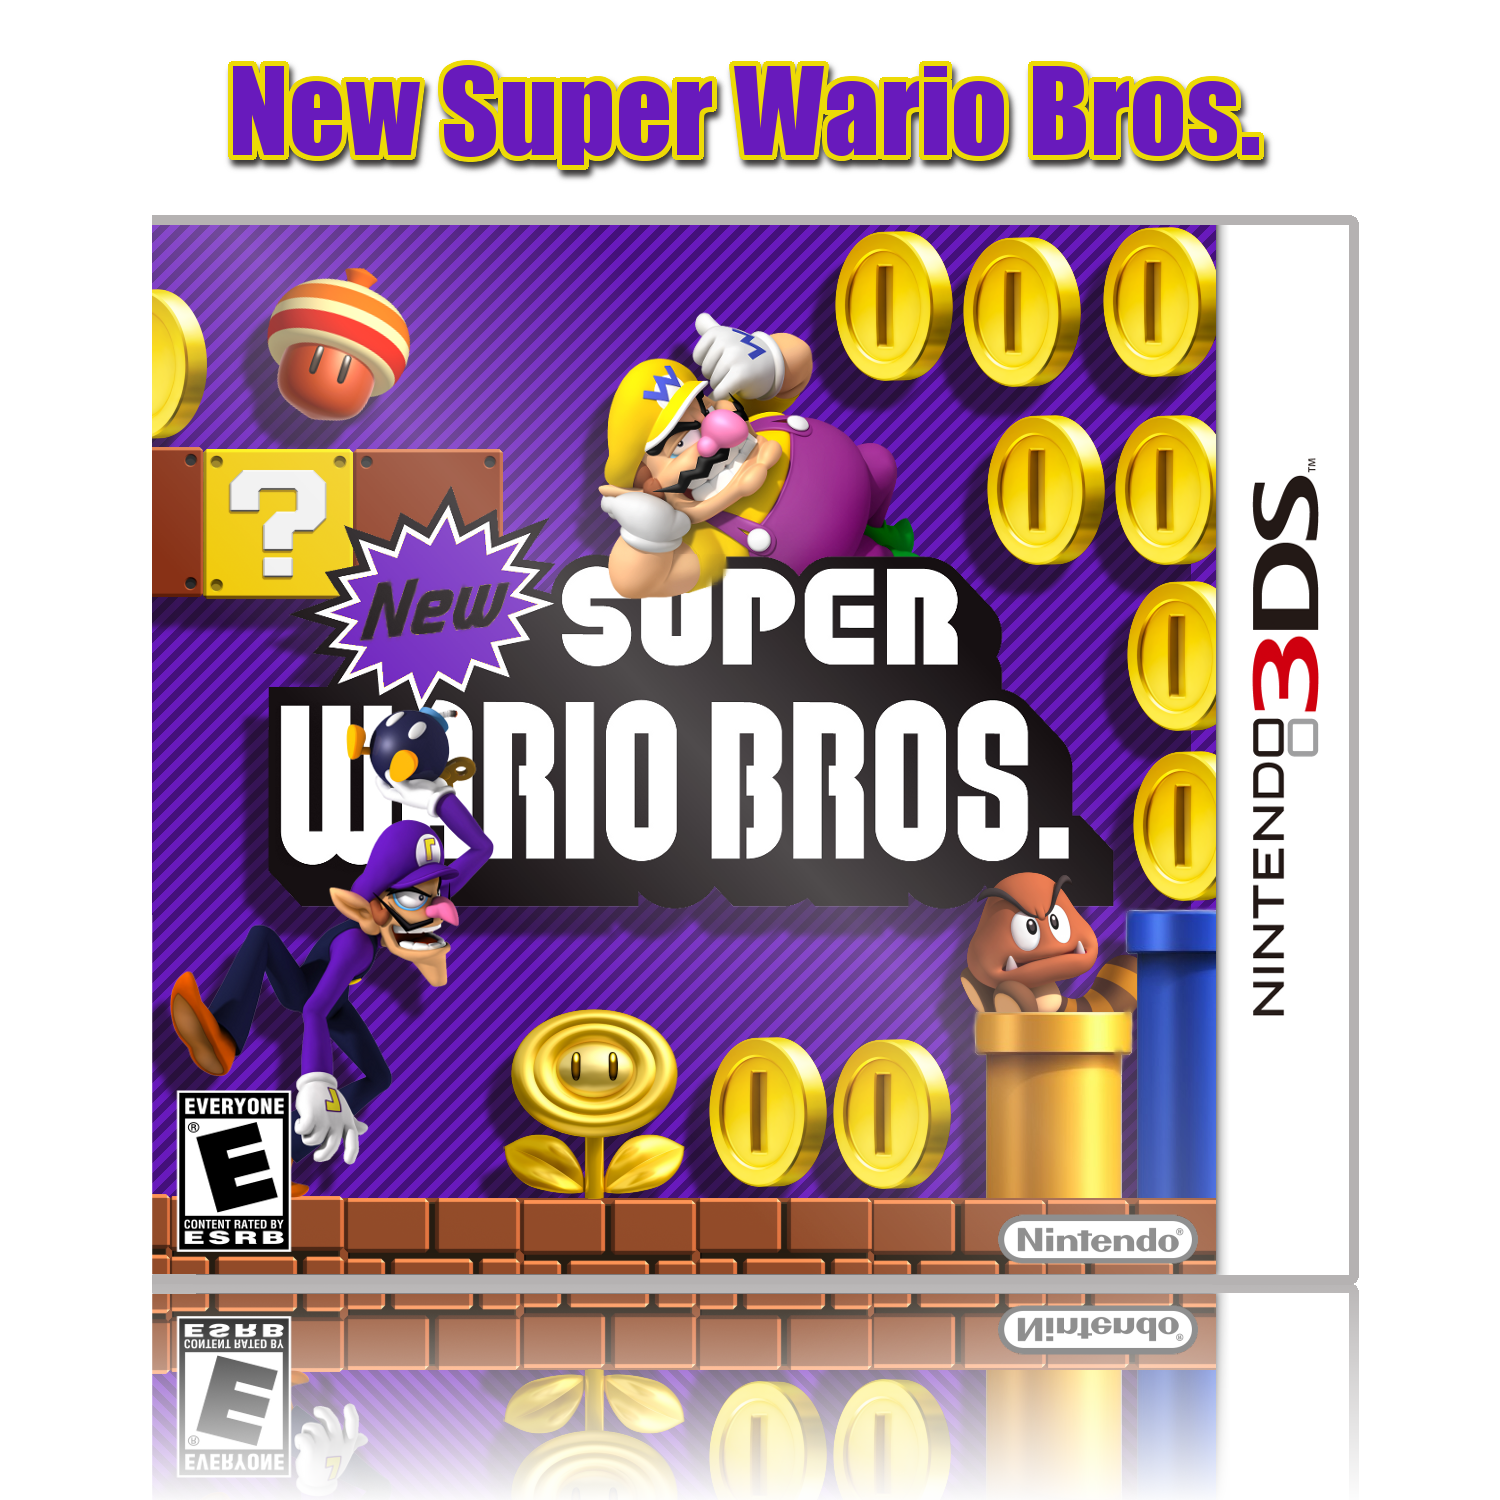 New Super Wario Bros. box cover